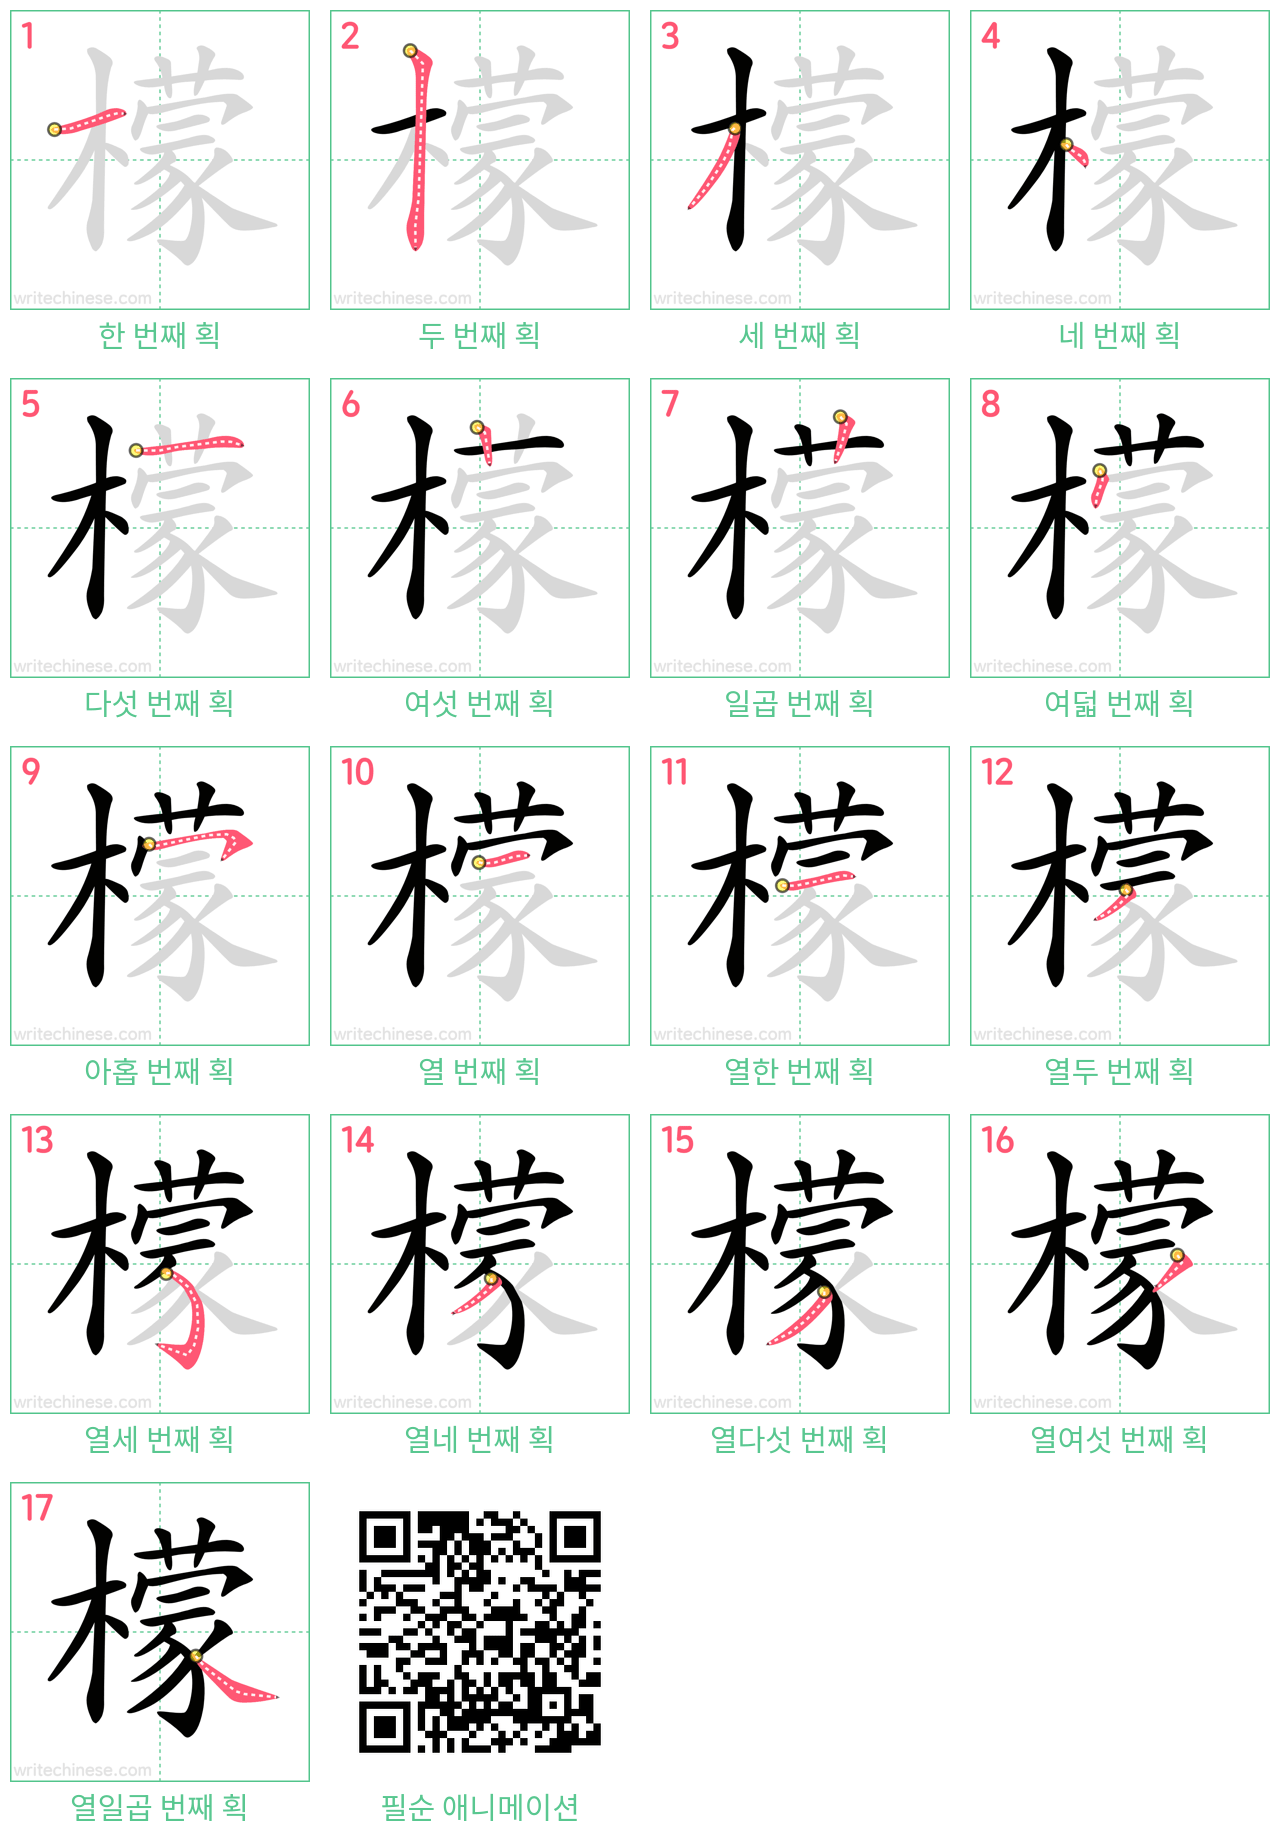 檬 step-by-step stroke order diagrams